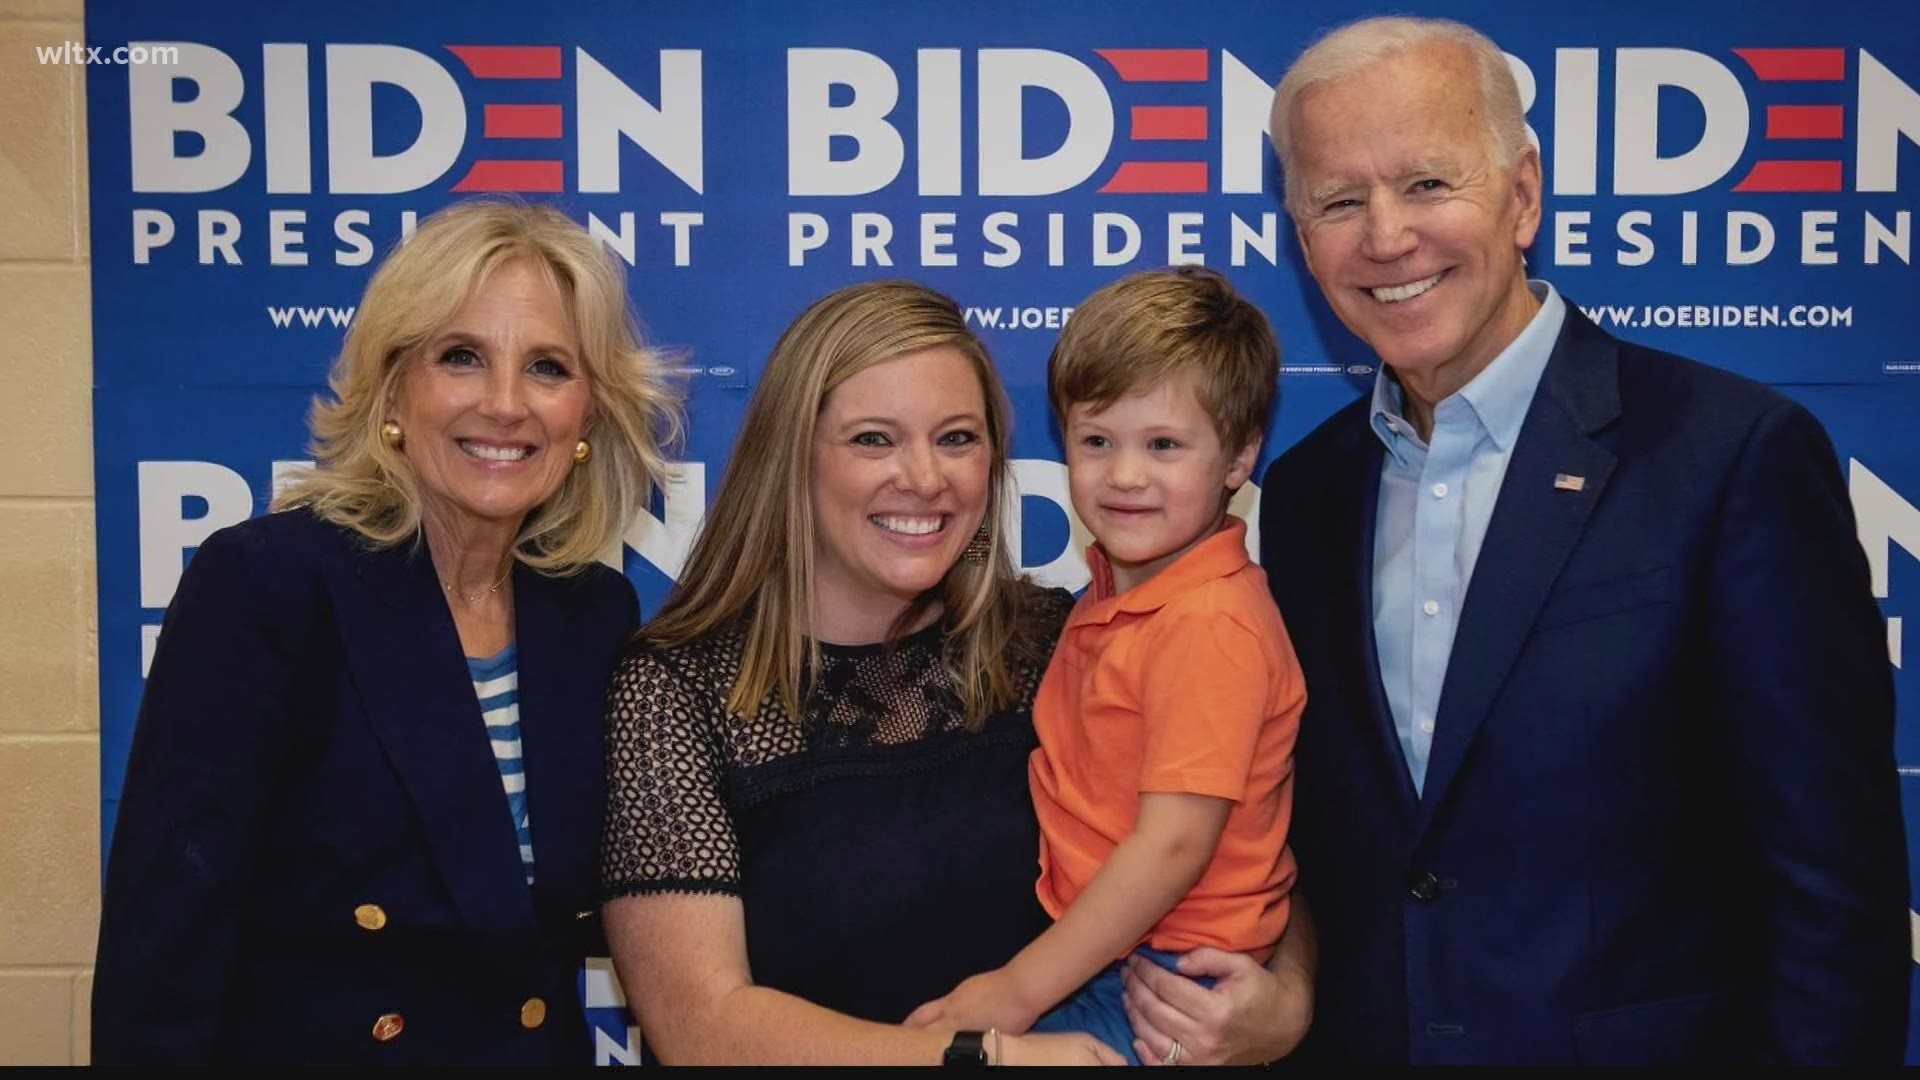 Local connection to President-Elect Joe Biden